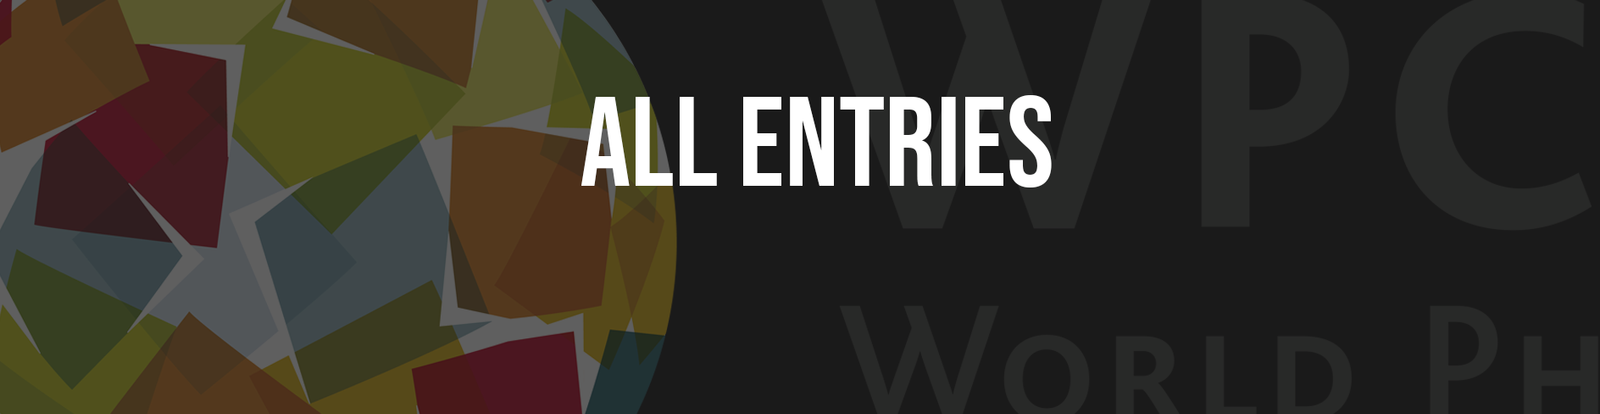 2015 – All Entries